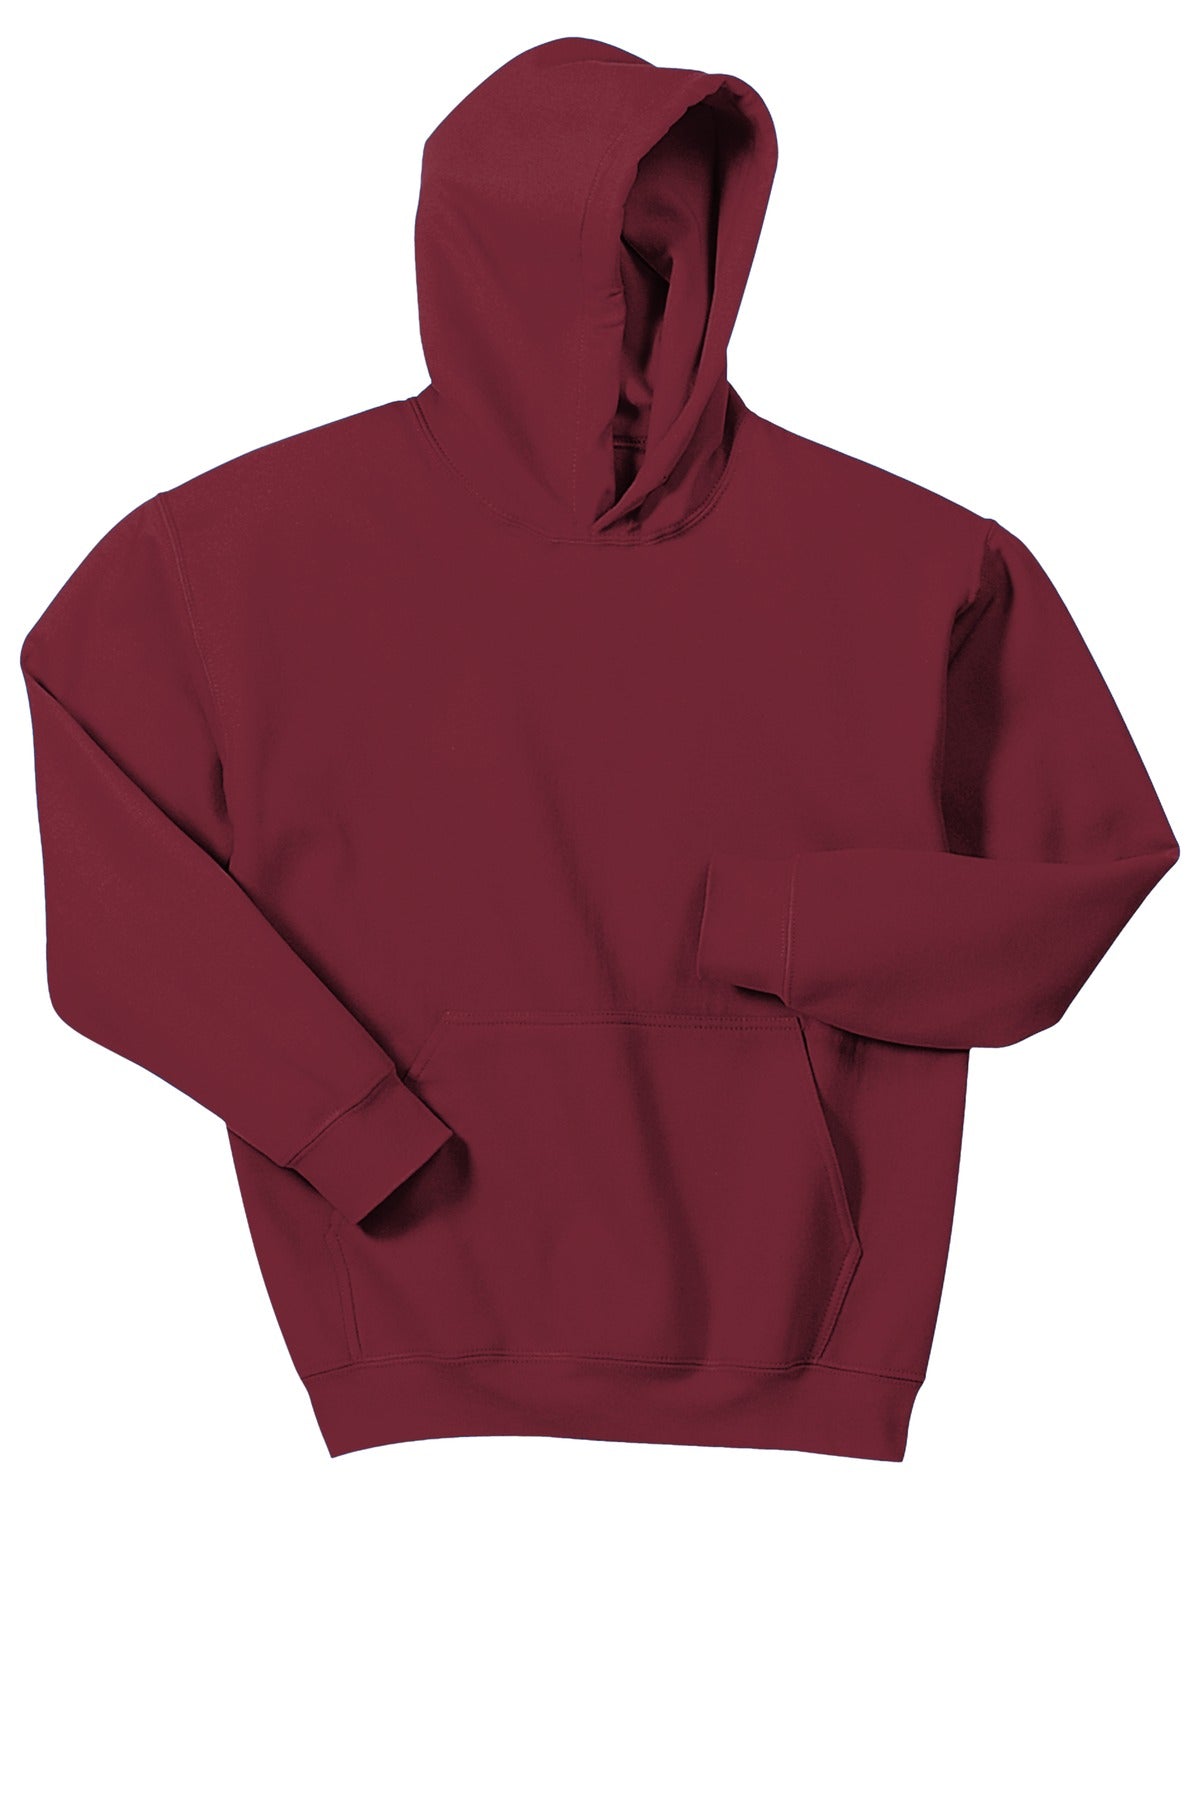 Sweatshirts/Fleece Cardinal Red Gildan